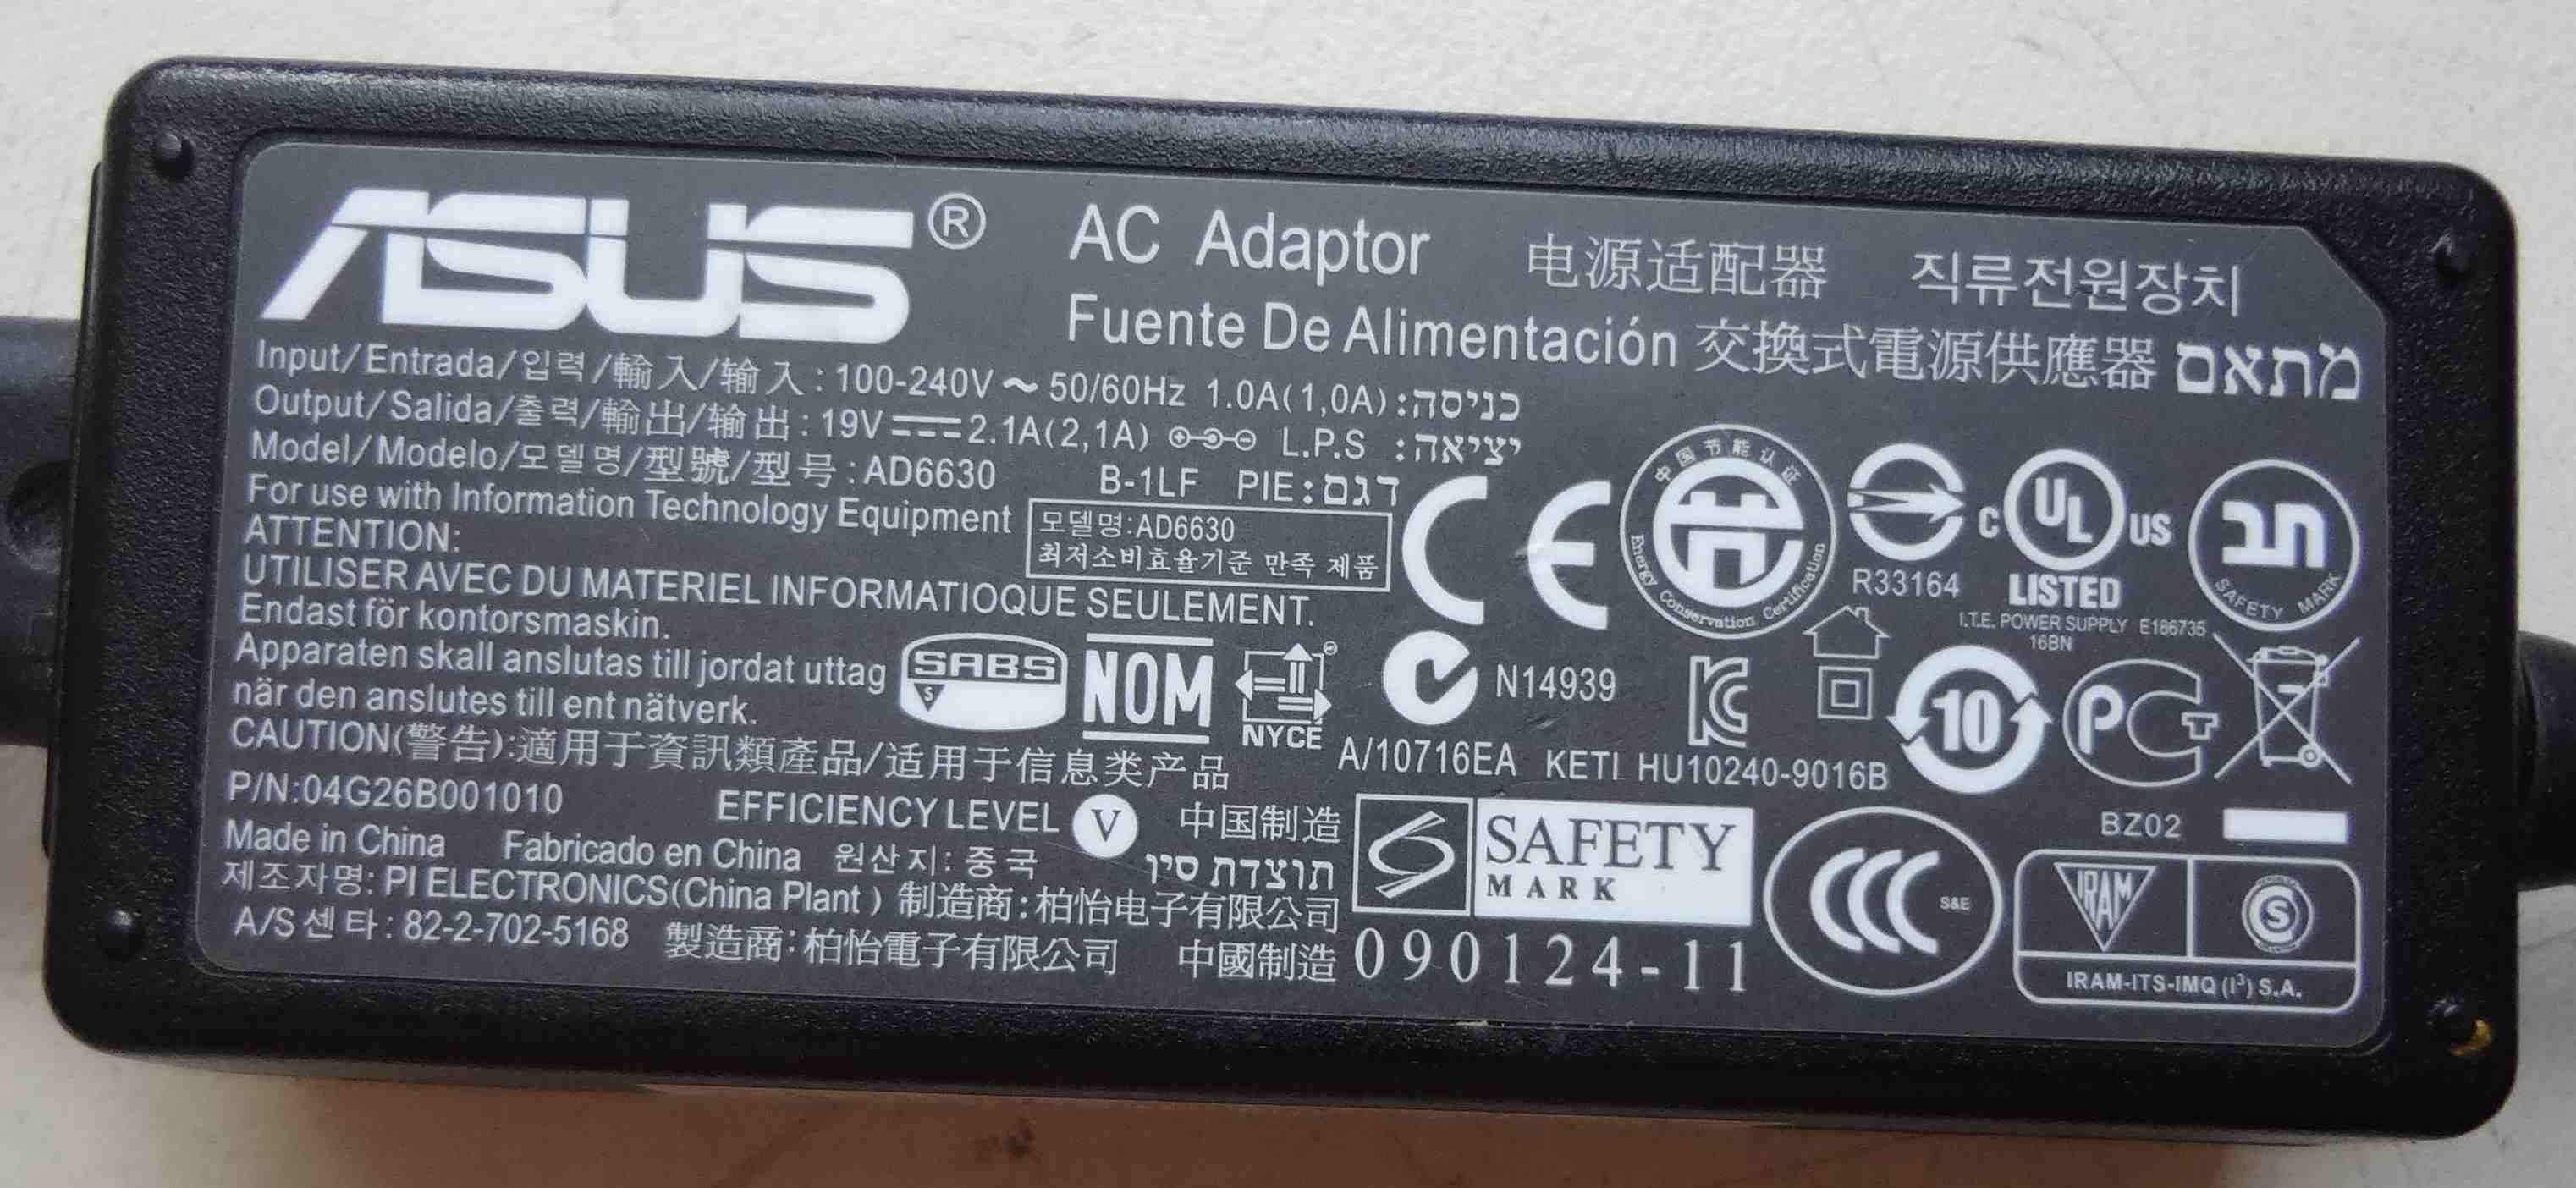 Блок питания Asus 19V 2.1A AD6630 адаптер